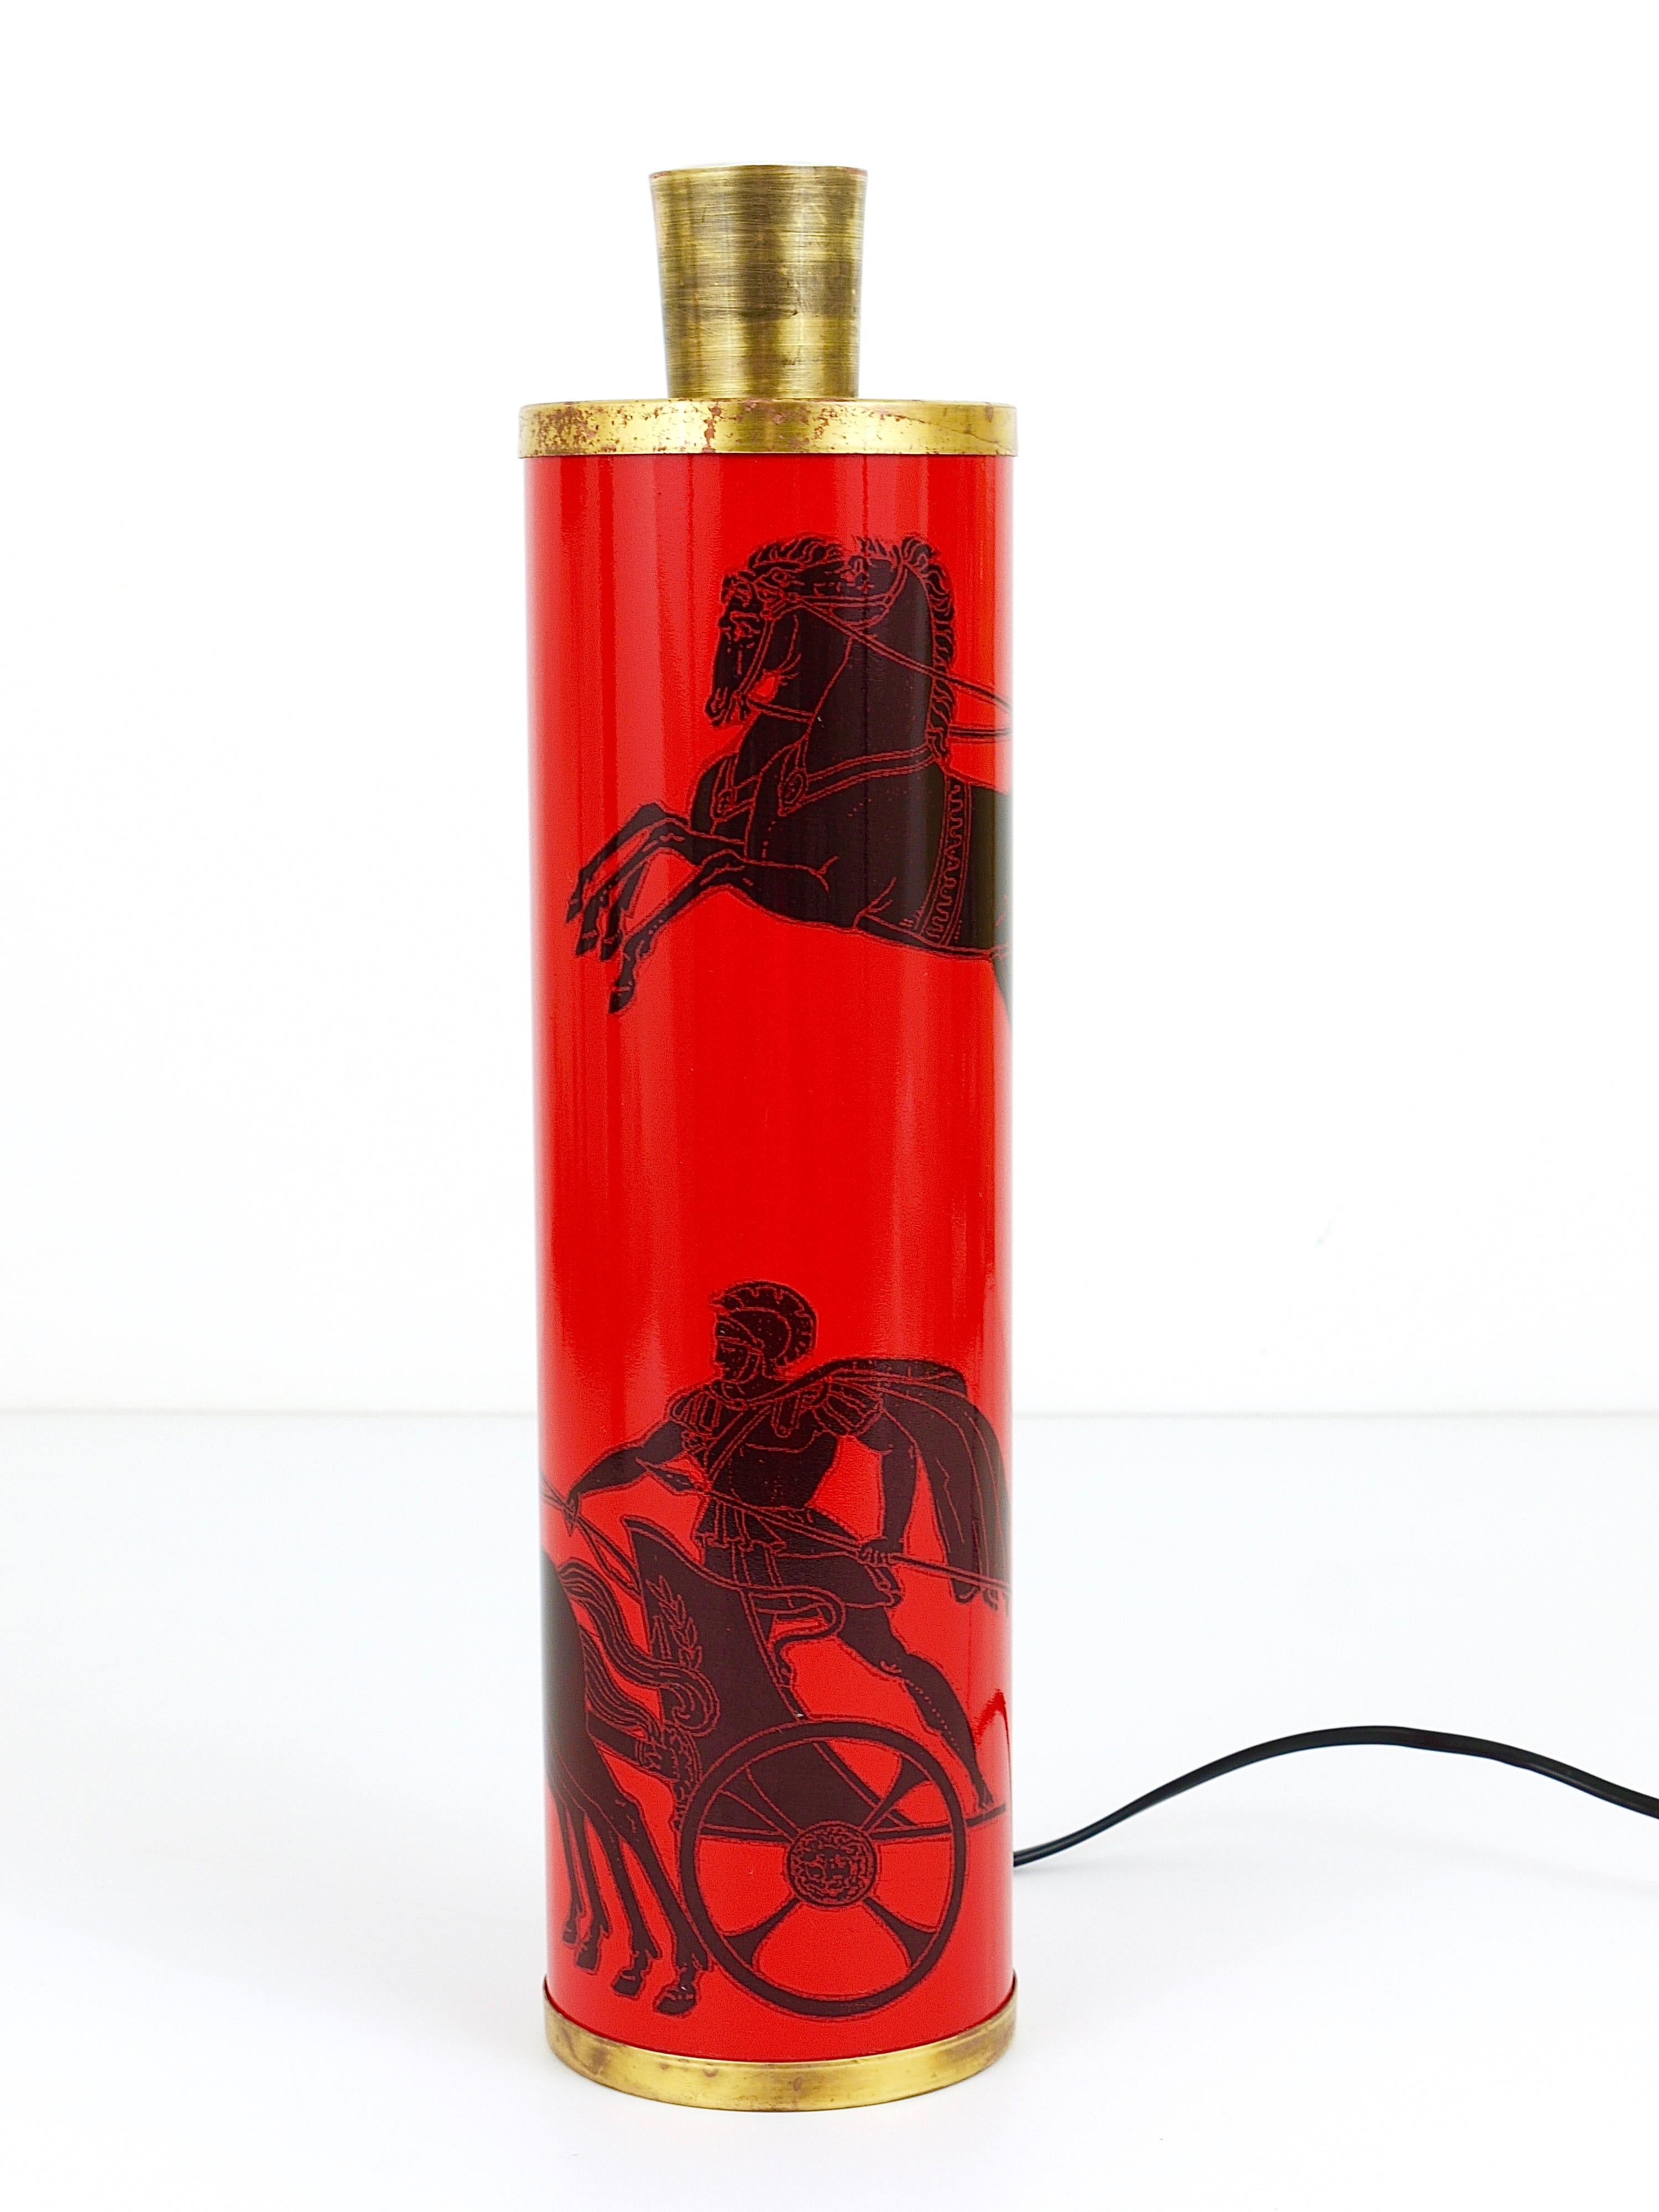 Une belle lampe de table ou d'appoint en métal émaillé rouge et noir des années 1950. Conçu par Piero Fornasetti pour l'Atelier Fornasetti, Milan, Italie. En très bon état avec une belle patine sur le métal doré. 